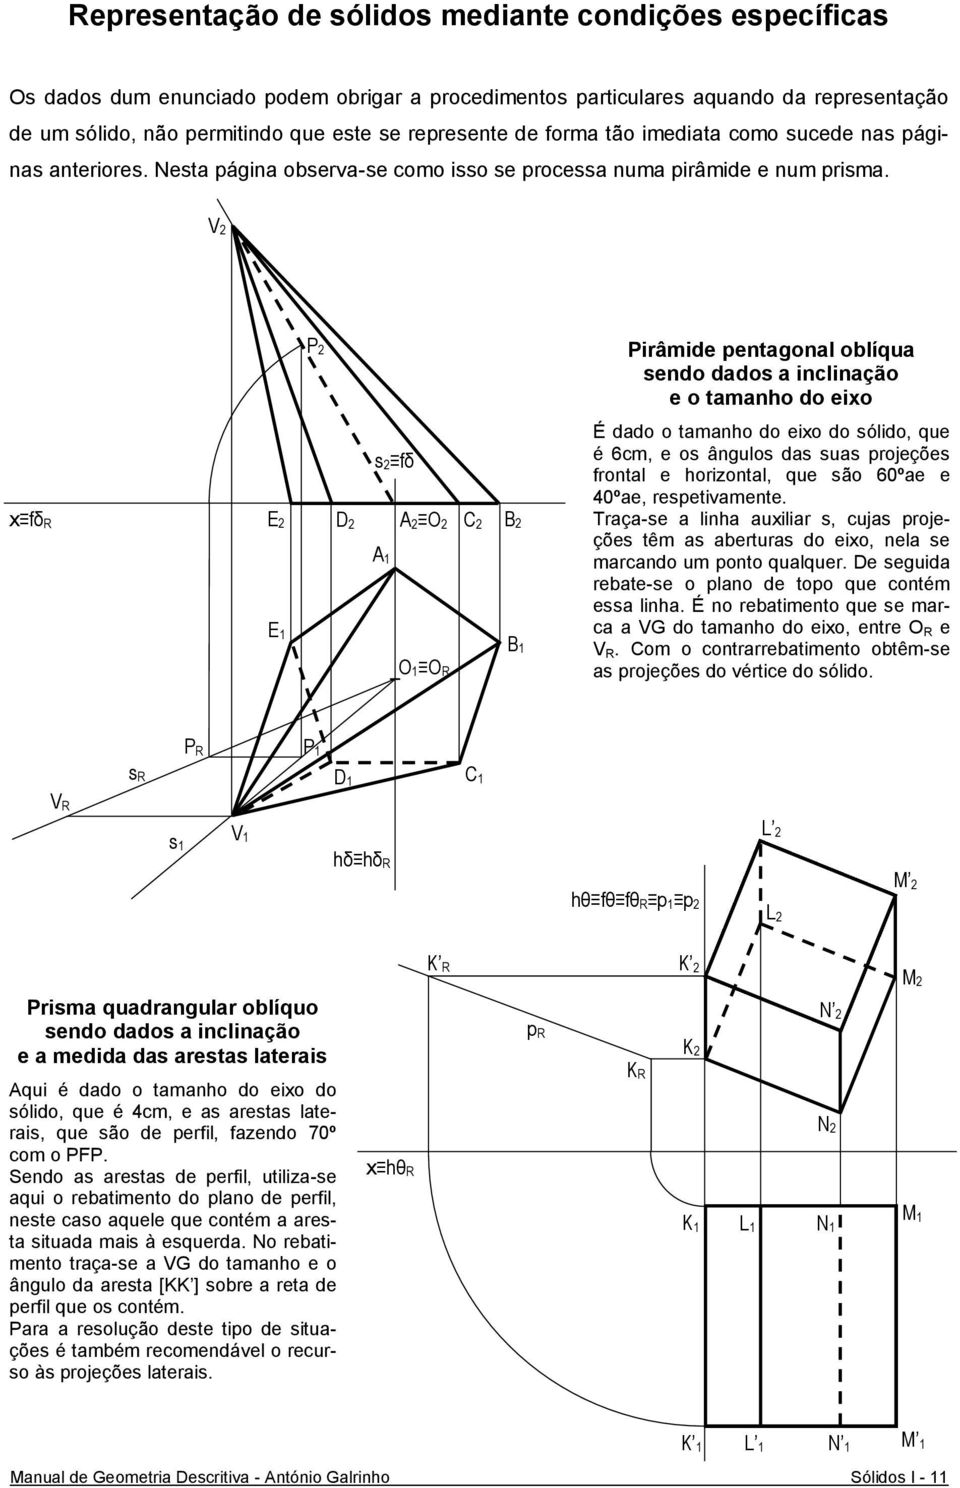 V2 fδ R P 2 E2 A2 O2 B2 D2 E 1 s2 fδ O 1 O R C2 Pirâmide pentagonal oblíqua sendo dados a inclinação e o tamanho do eio É dado o tamanho do eio do sólido, que é 6cm, e os ângulos das suas projeções